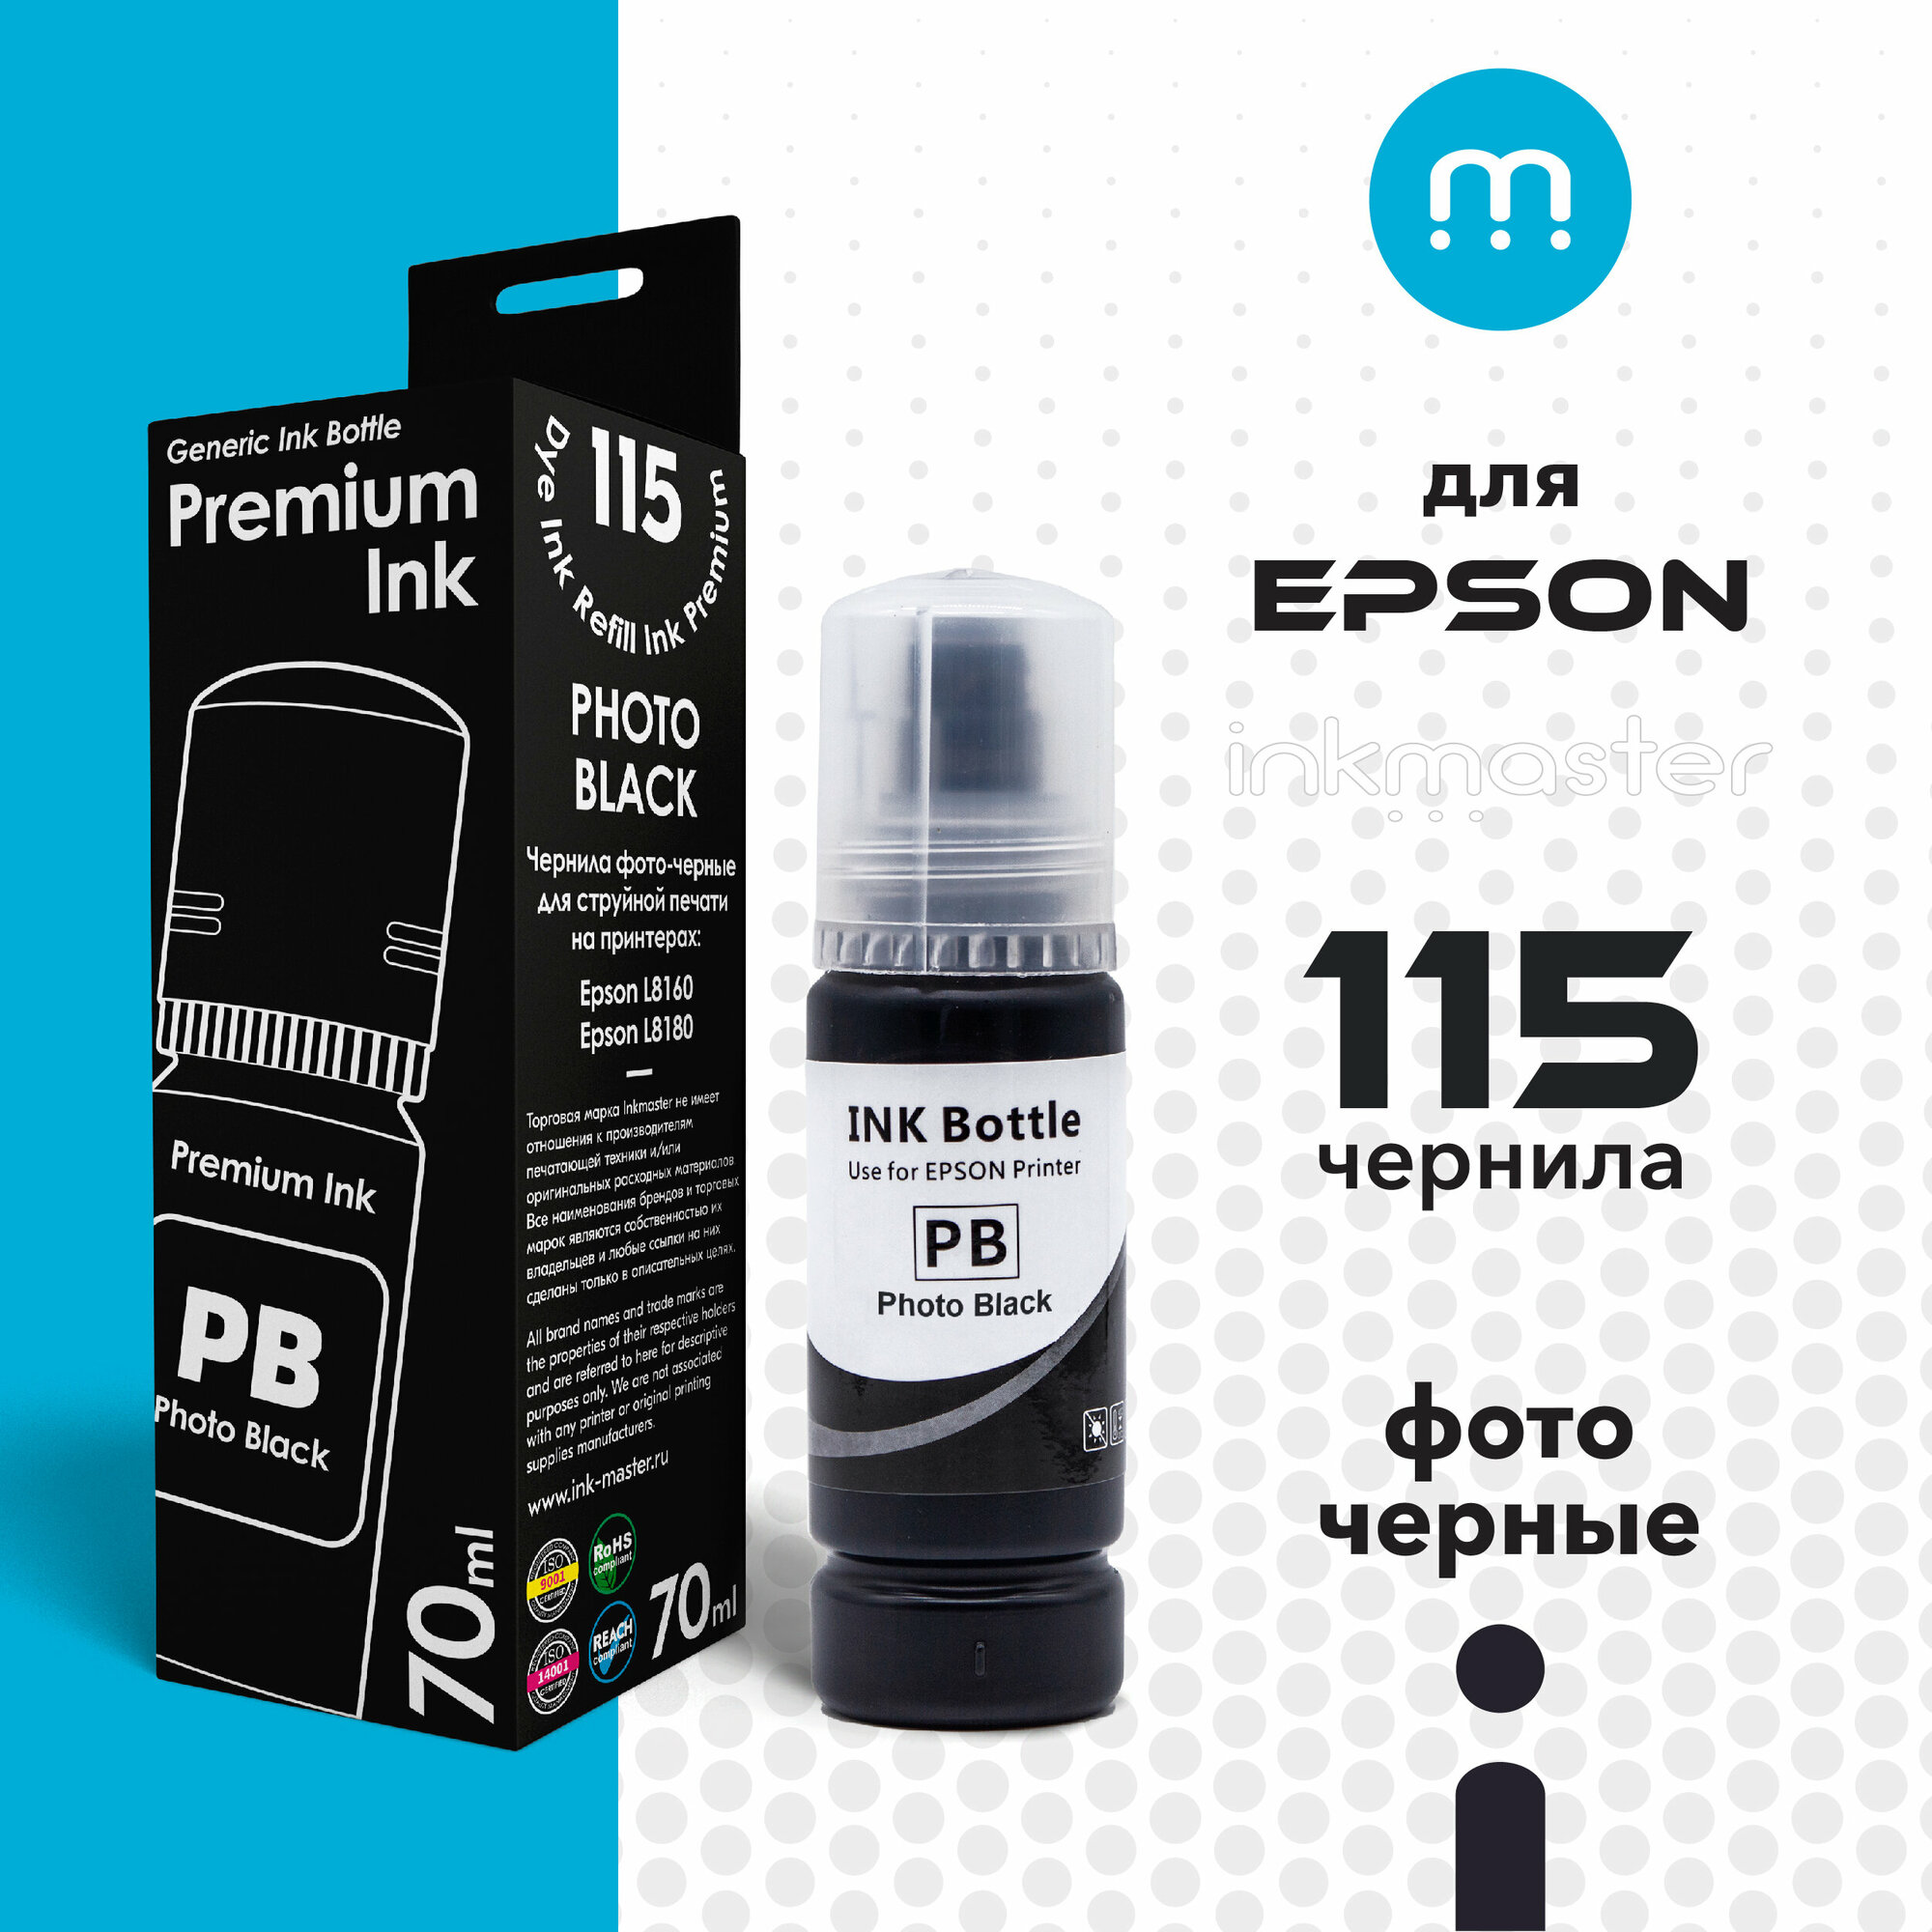 Чернила для принтера Epson 115 L8160/L8180 (C13T07D14A) фото-черные (photo black) 70 мл совместимые